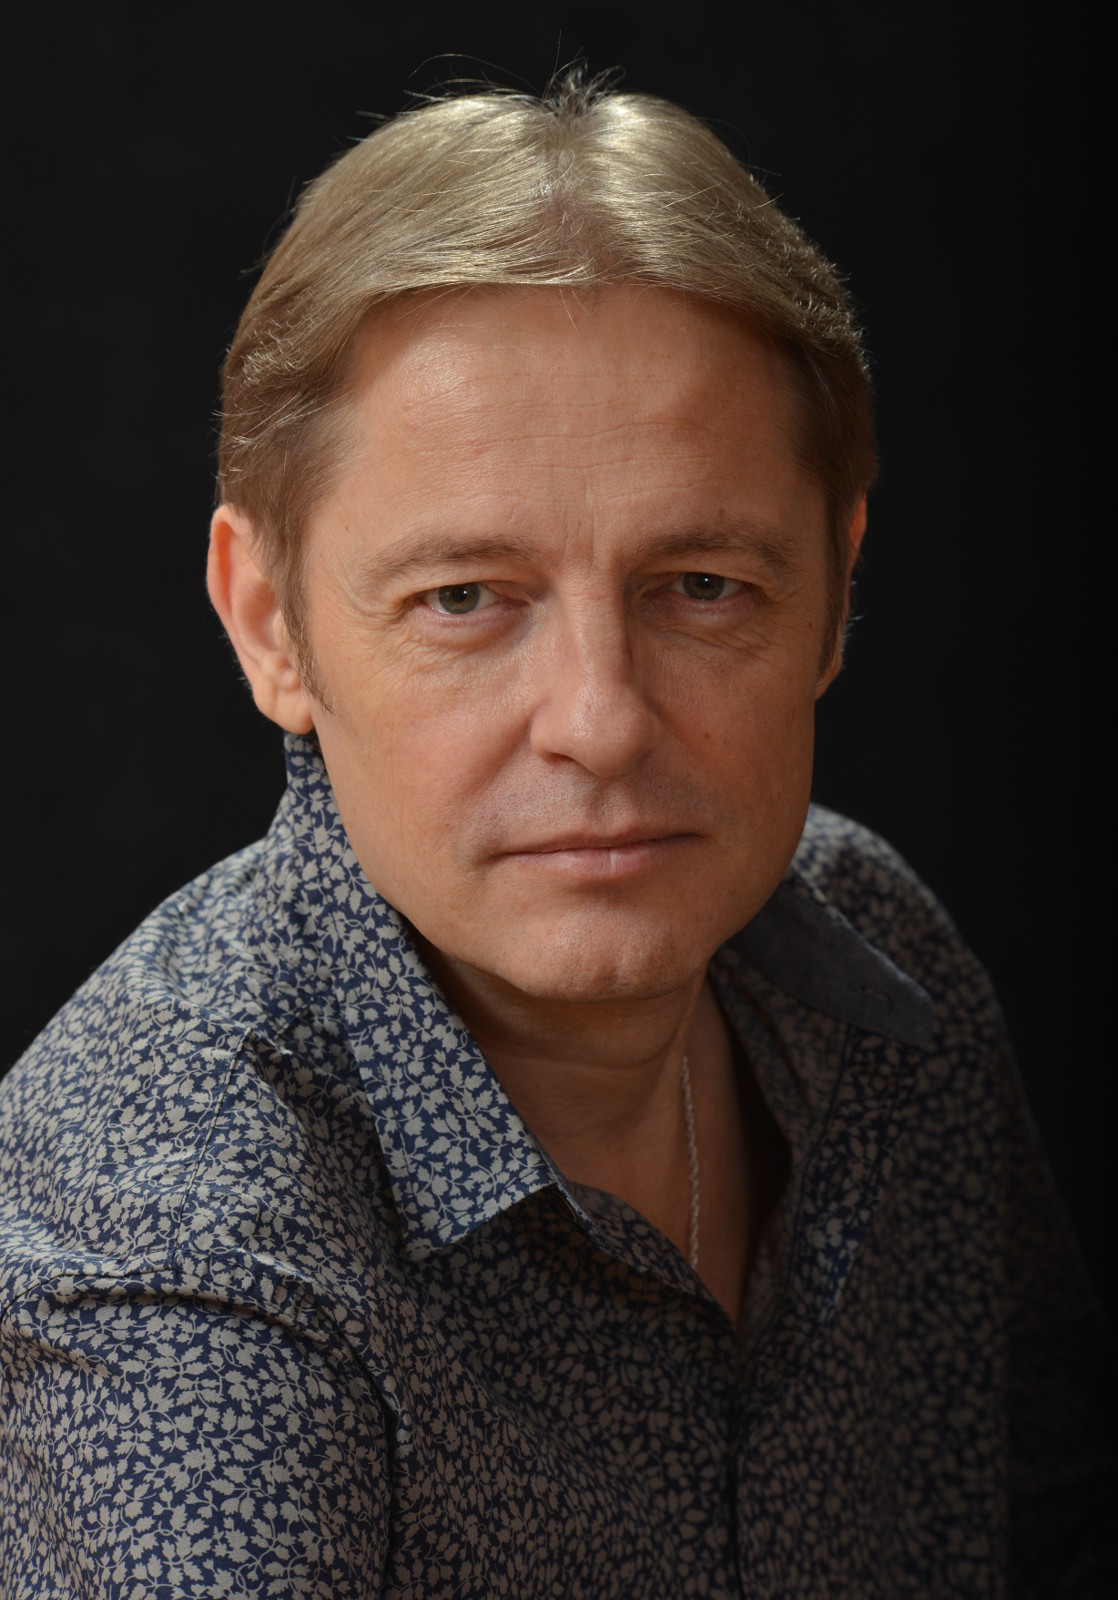 Vadim Pozharsky